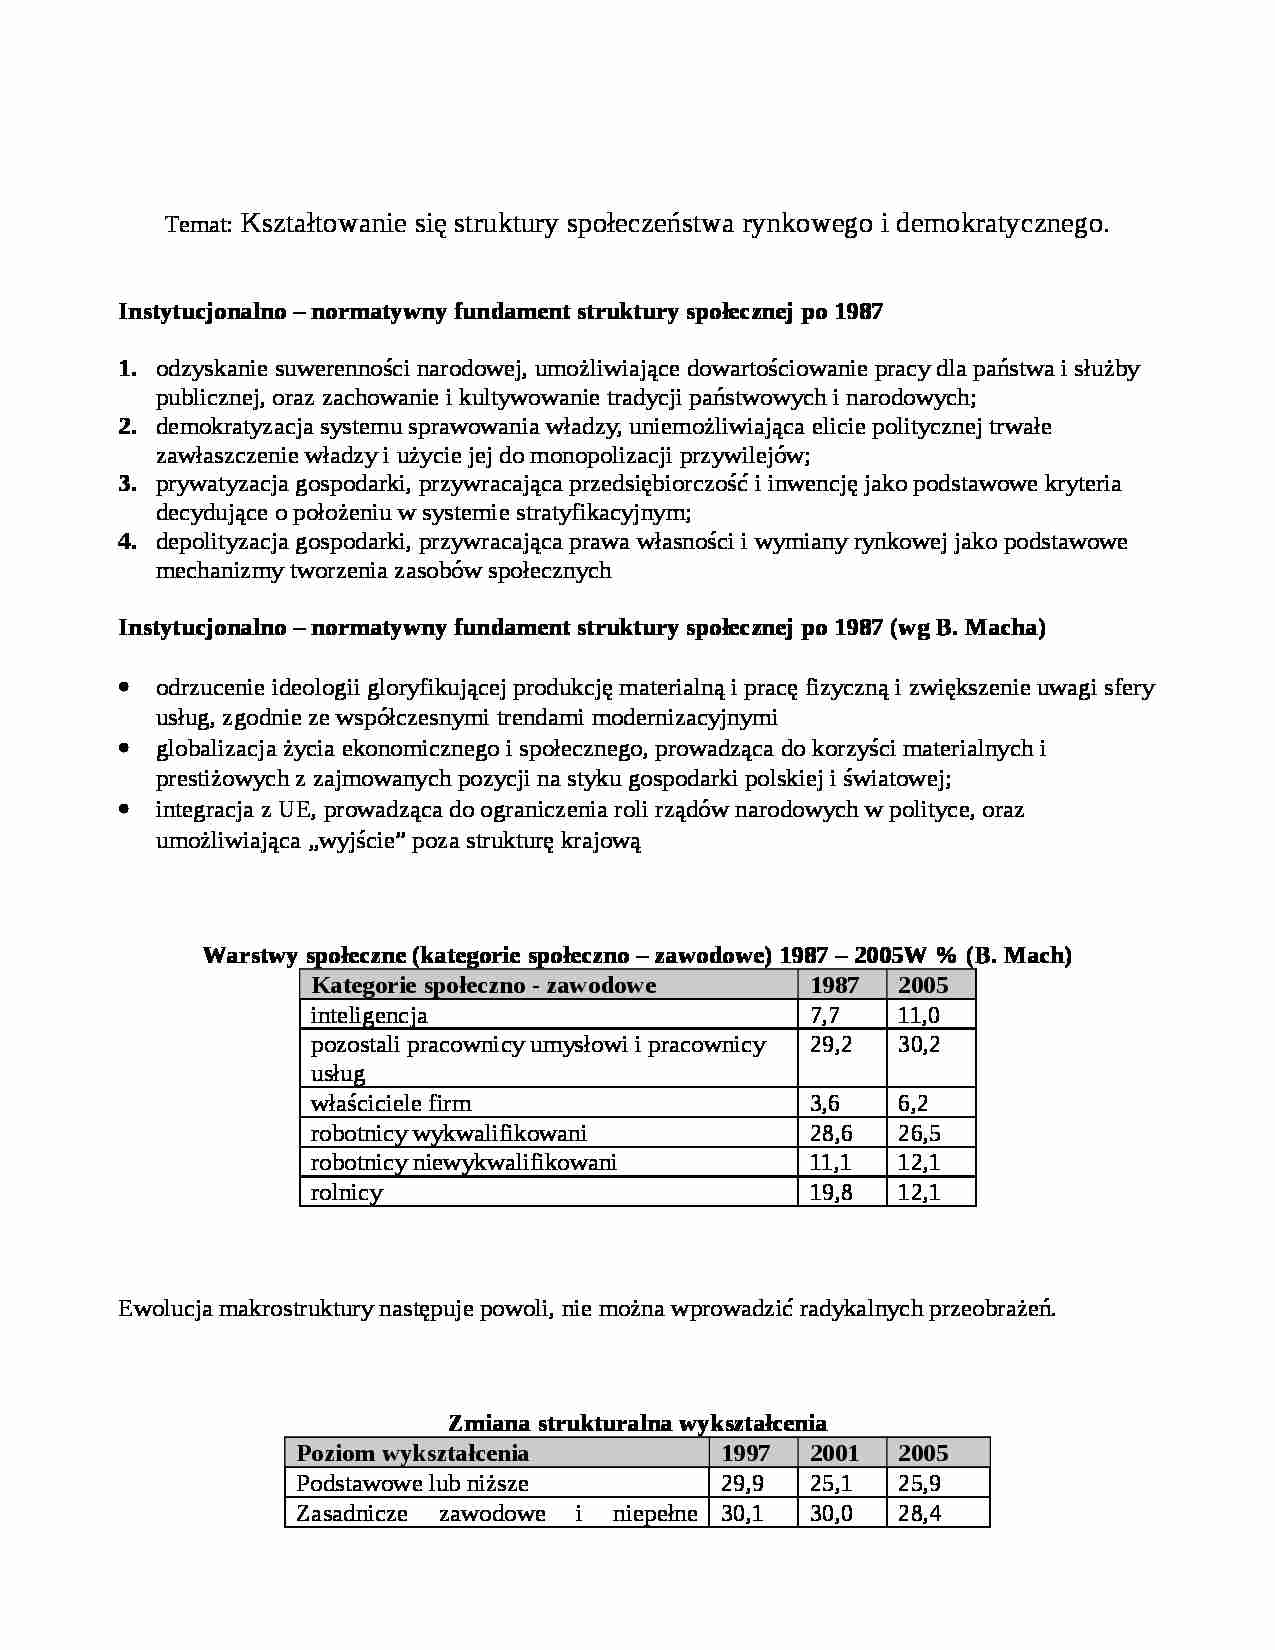 Dynamika rozwoju współczesngo społeczeństwa plskiego - notatki z wykładu 4 - strona 1